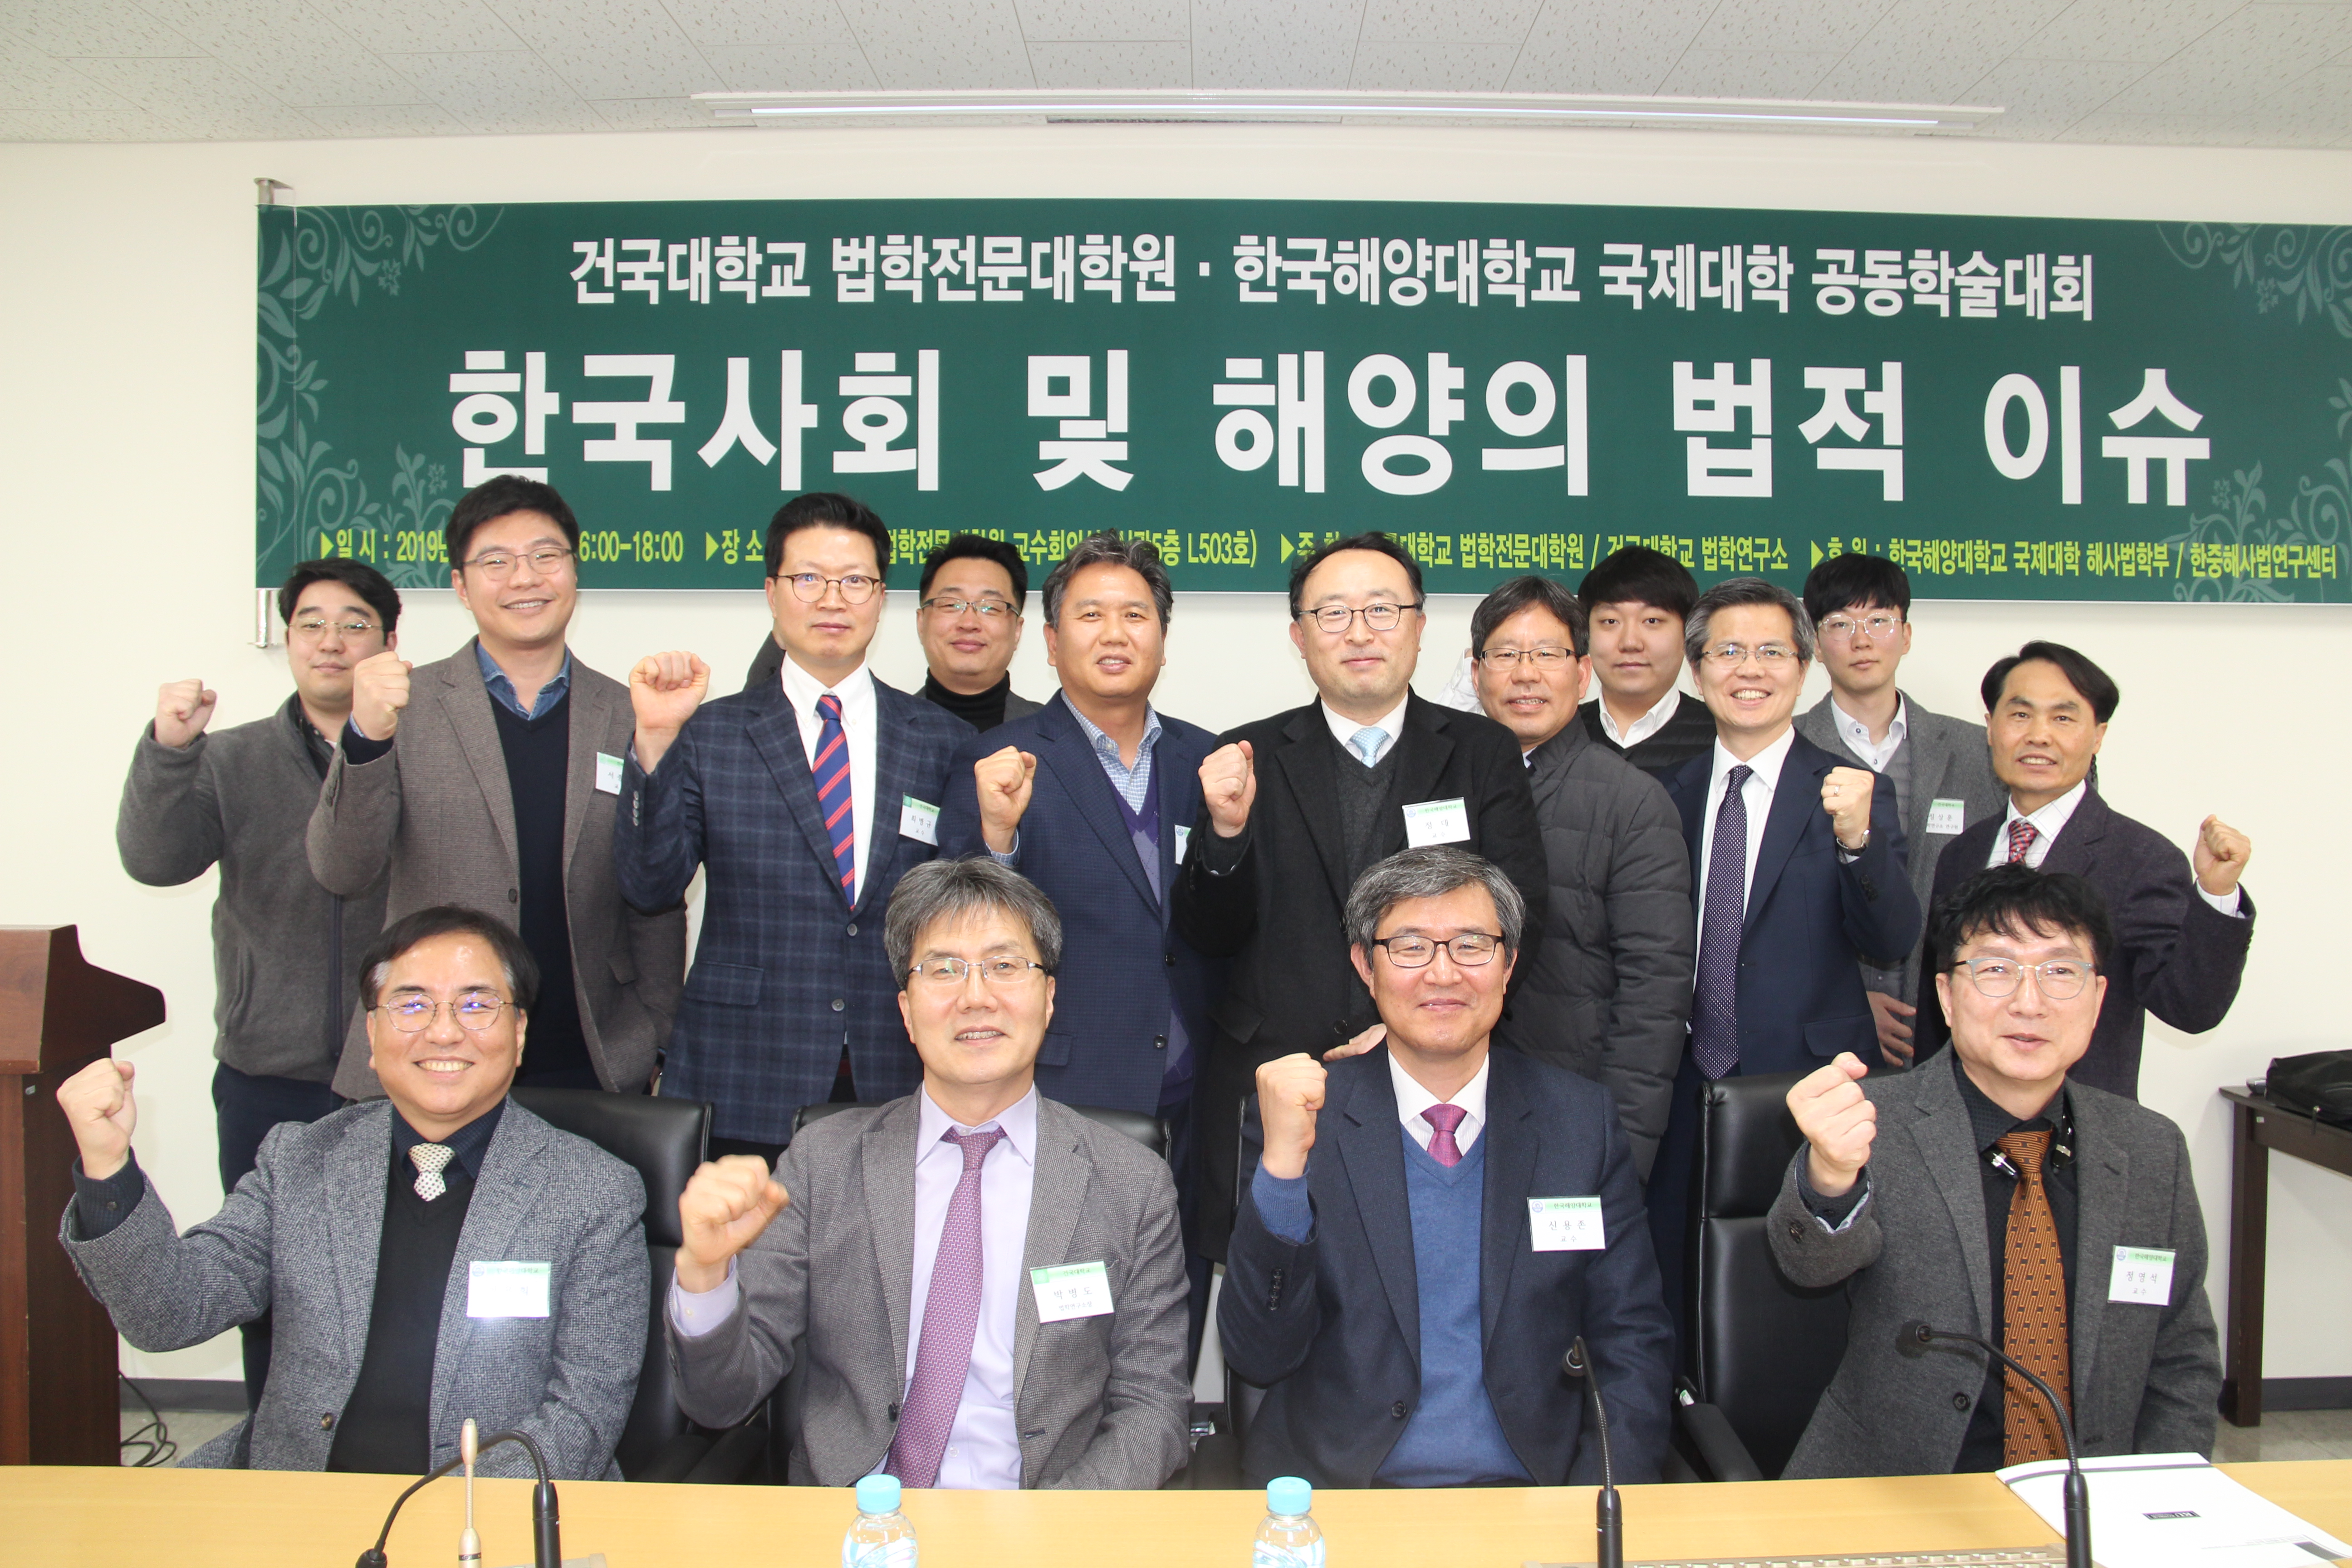 2019년 1월 25일 건국대학교 법학연구소 한국해양대학교 공동학술대회